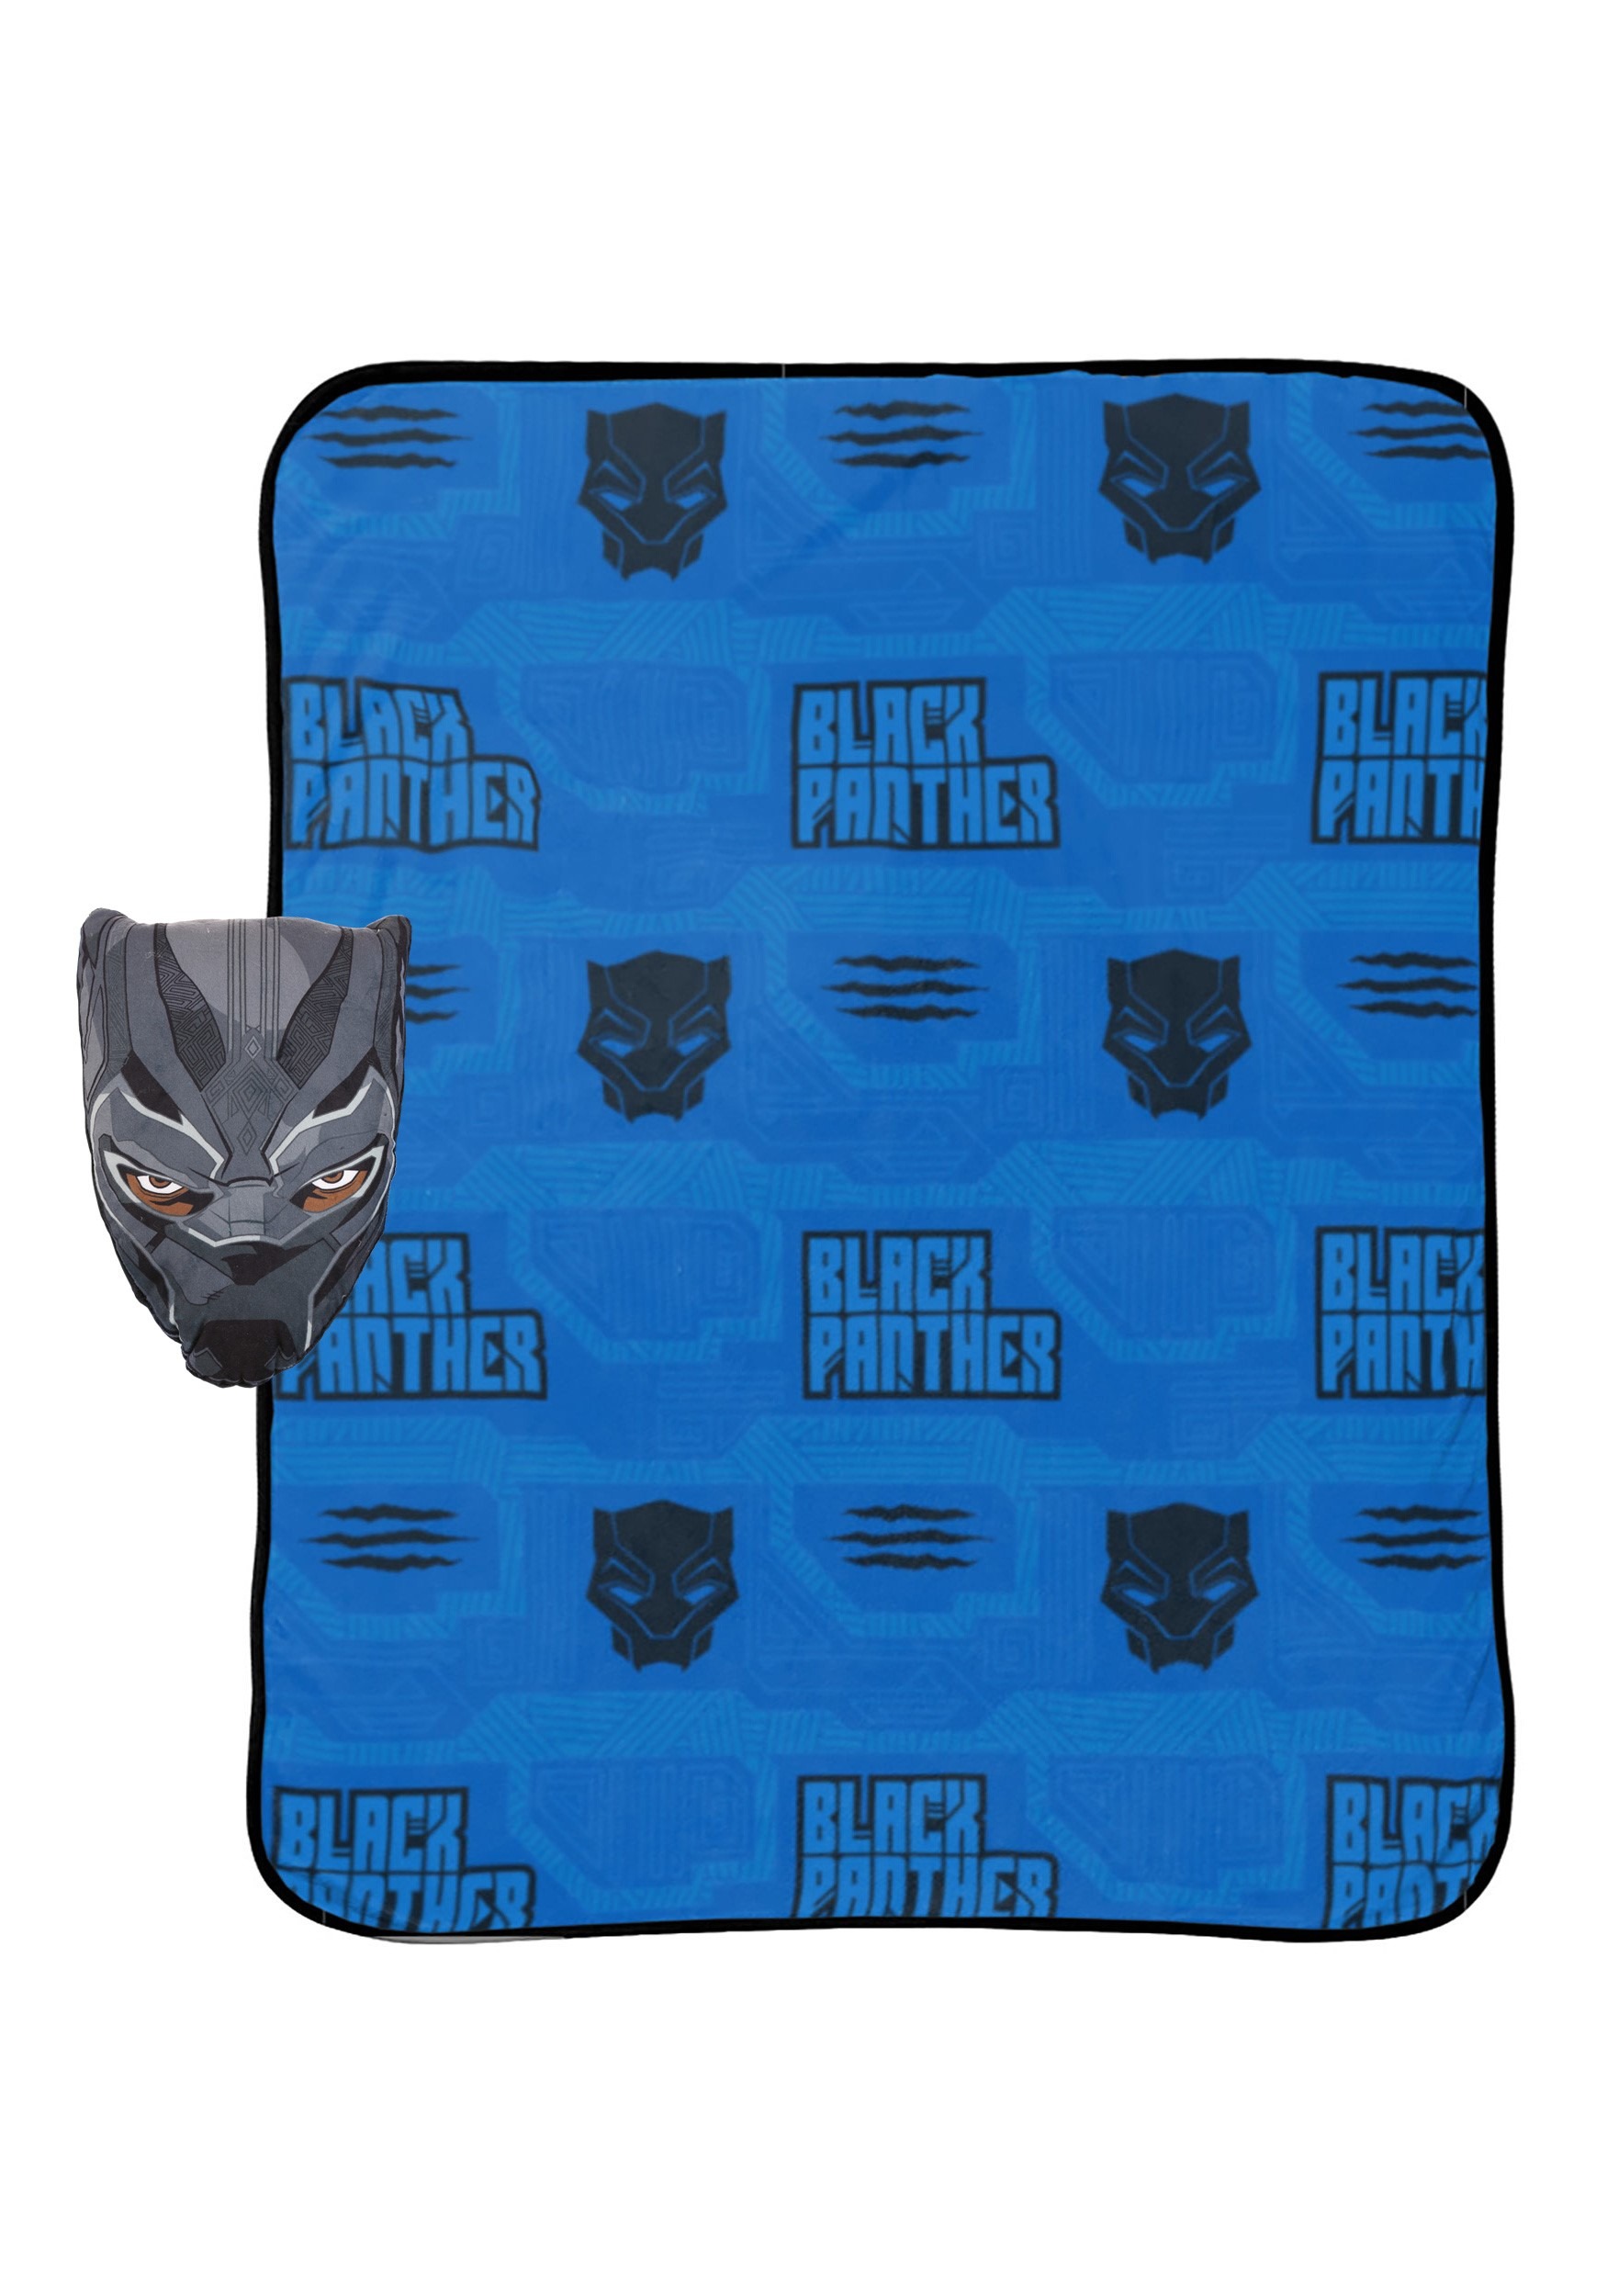 Black Panther Nogginz and Blanket Set